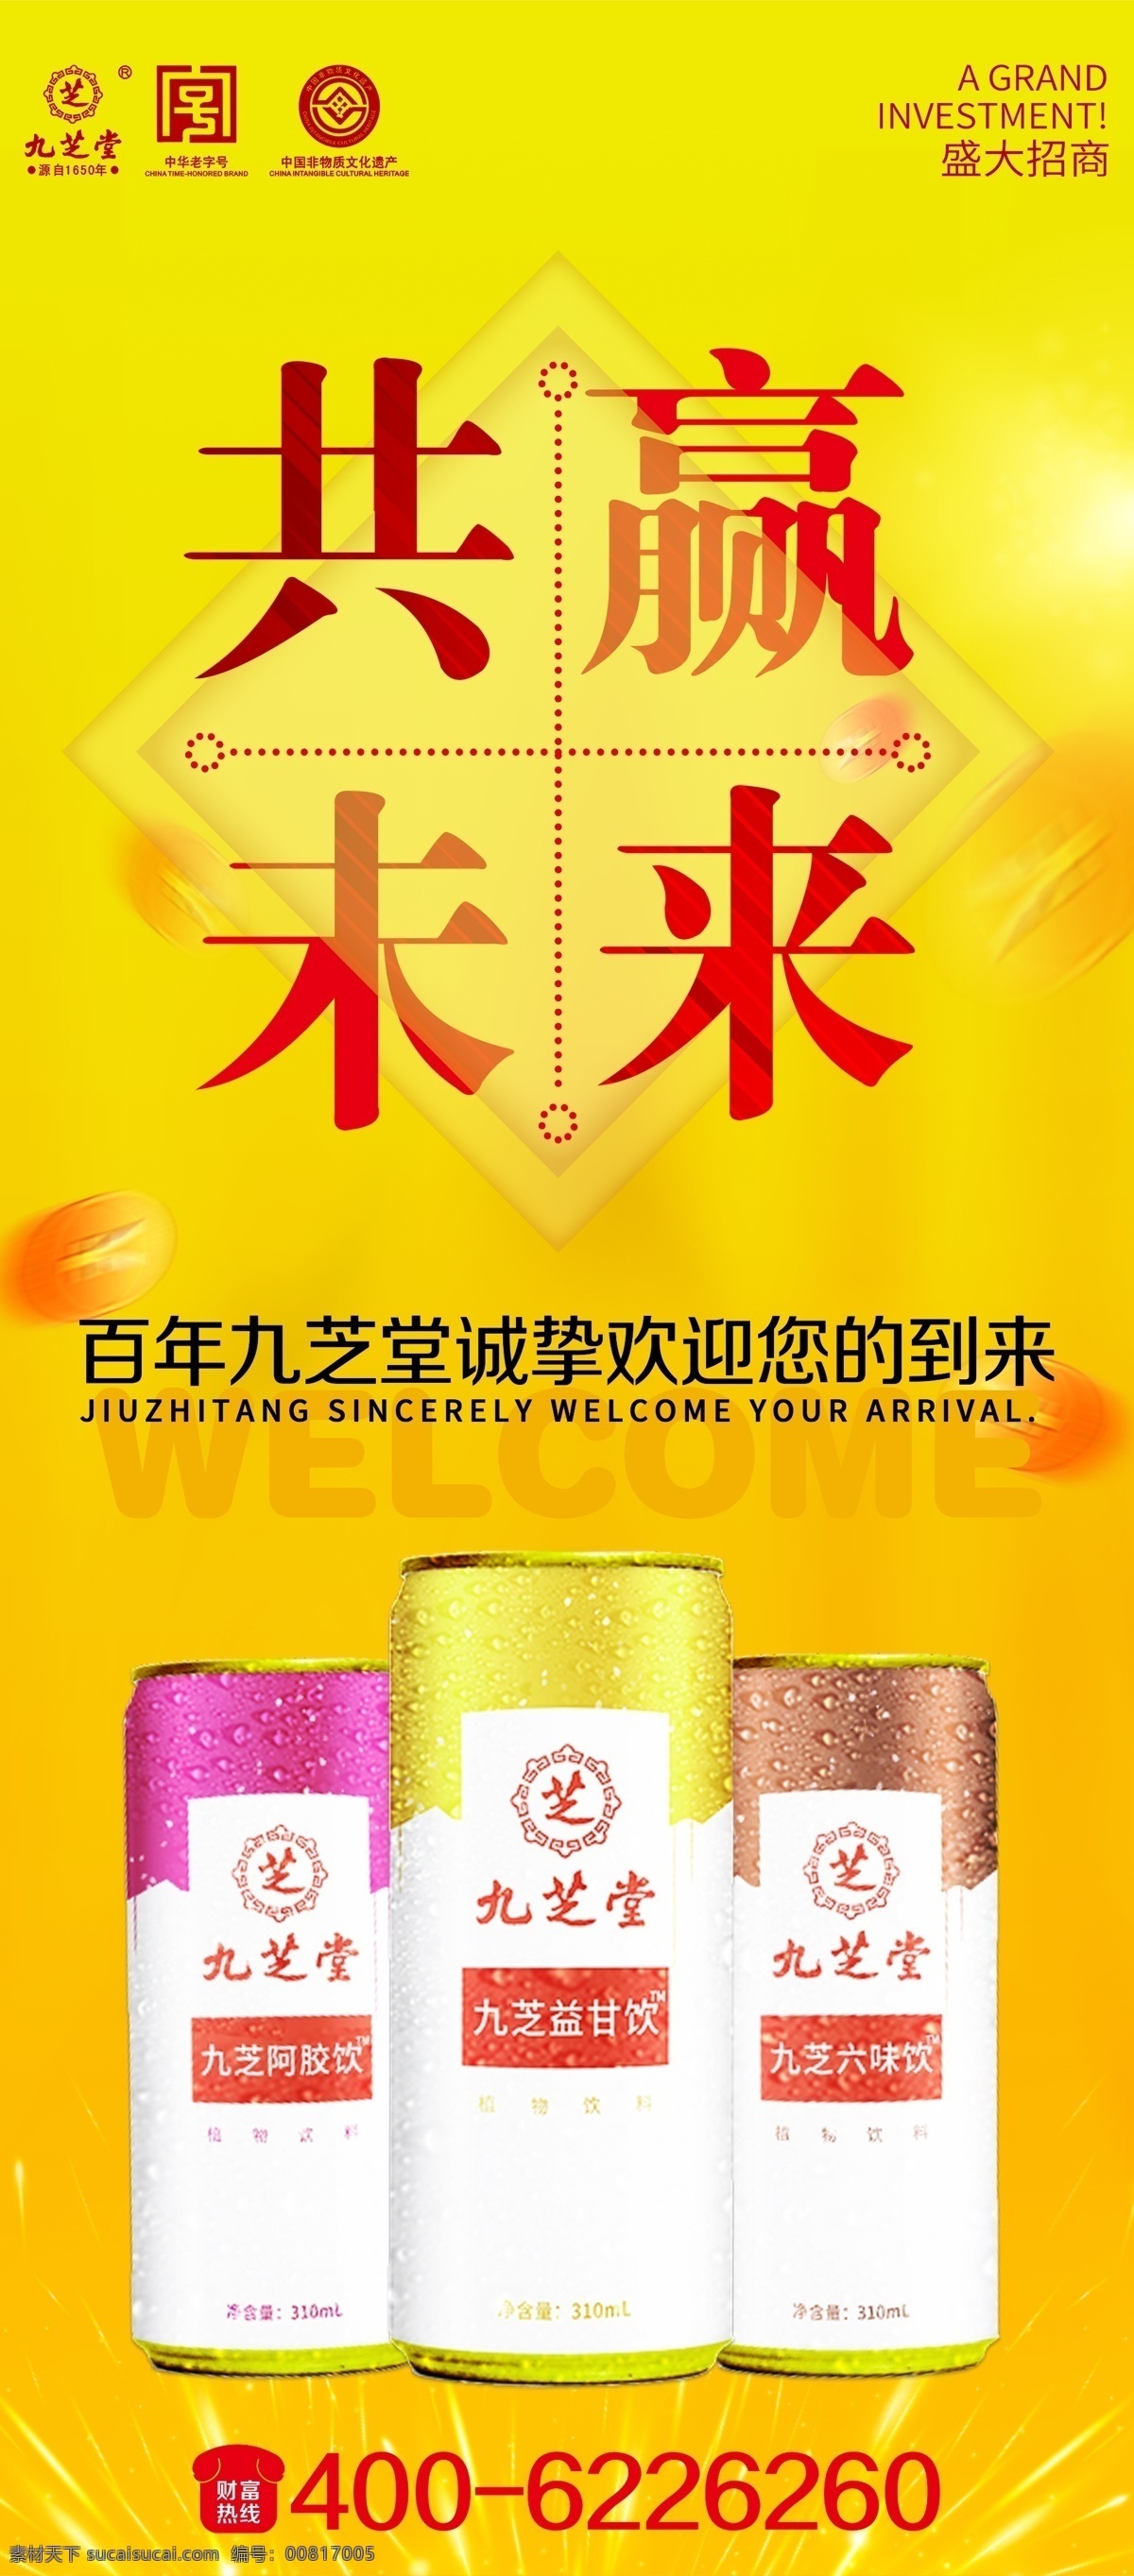 九芝堂 功能性 饮料 功能饮料 能量饮料 xs 展架 黄色背景